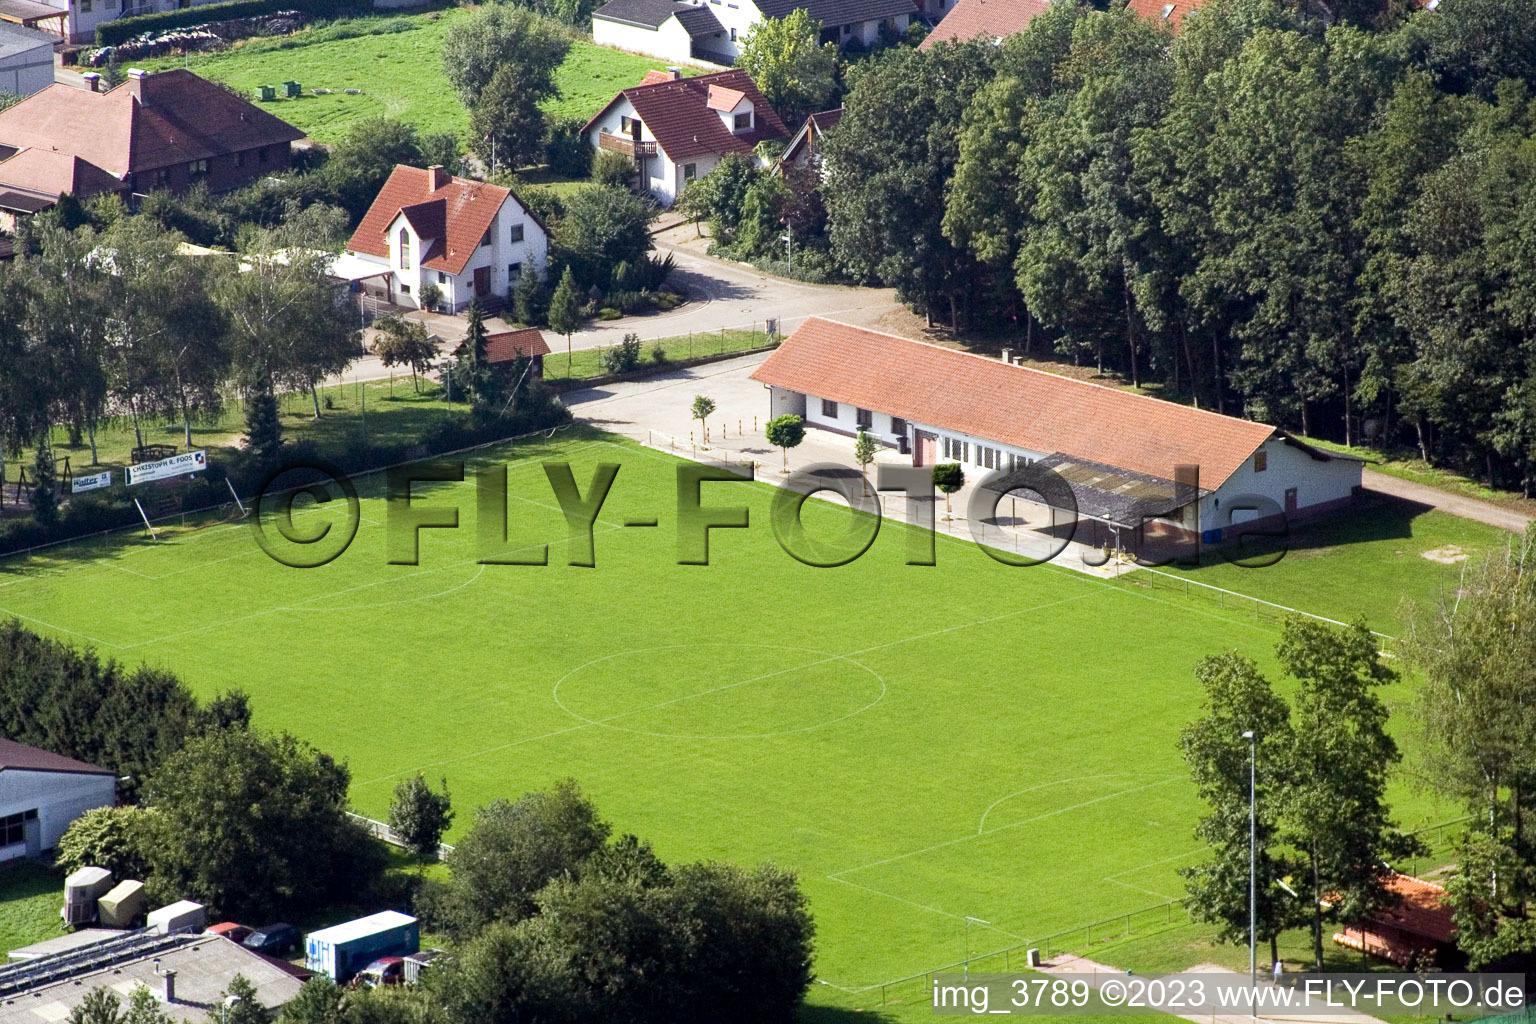 Vue aérienne de Club de football à Winden dans le département Rhénanie-Palatinat, Allemagne